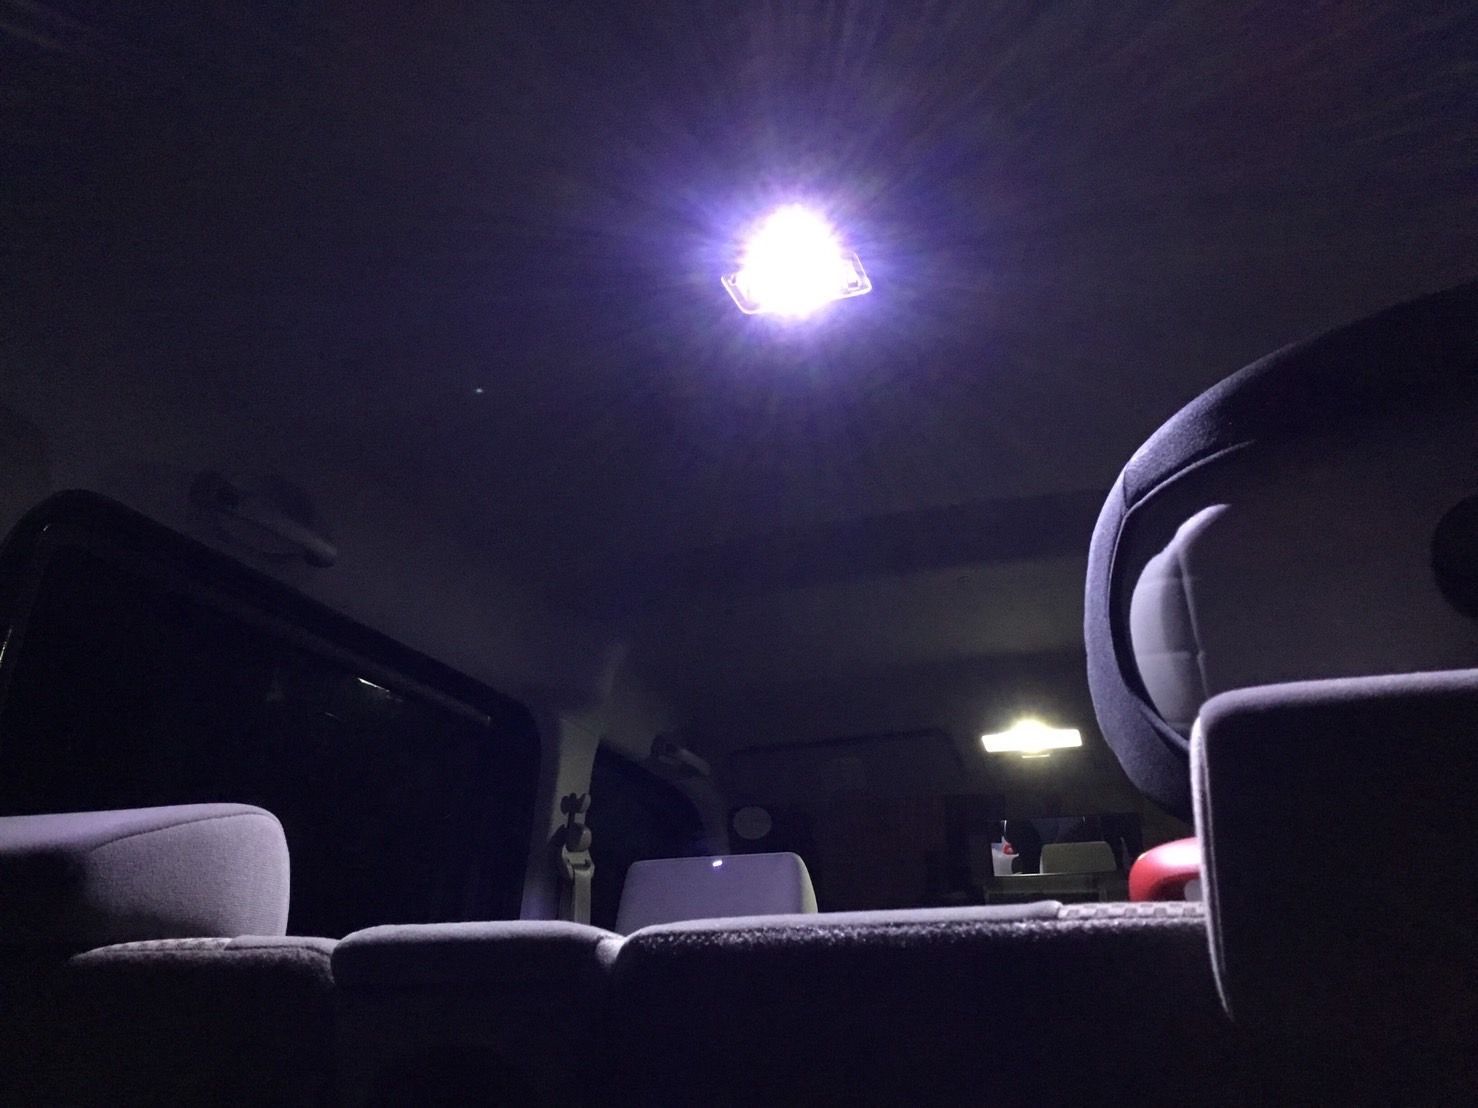 E25 キャラバン商用車 純正球交換用 T10 LED ルームランプ ウェッジ 3個セット 室内灯 読書灯 激安 SMDライト パーツ ホワイト 日産  パーツ - メルカリ